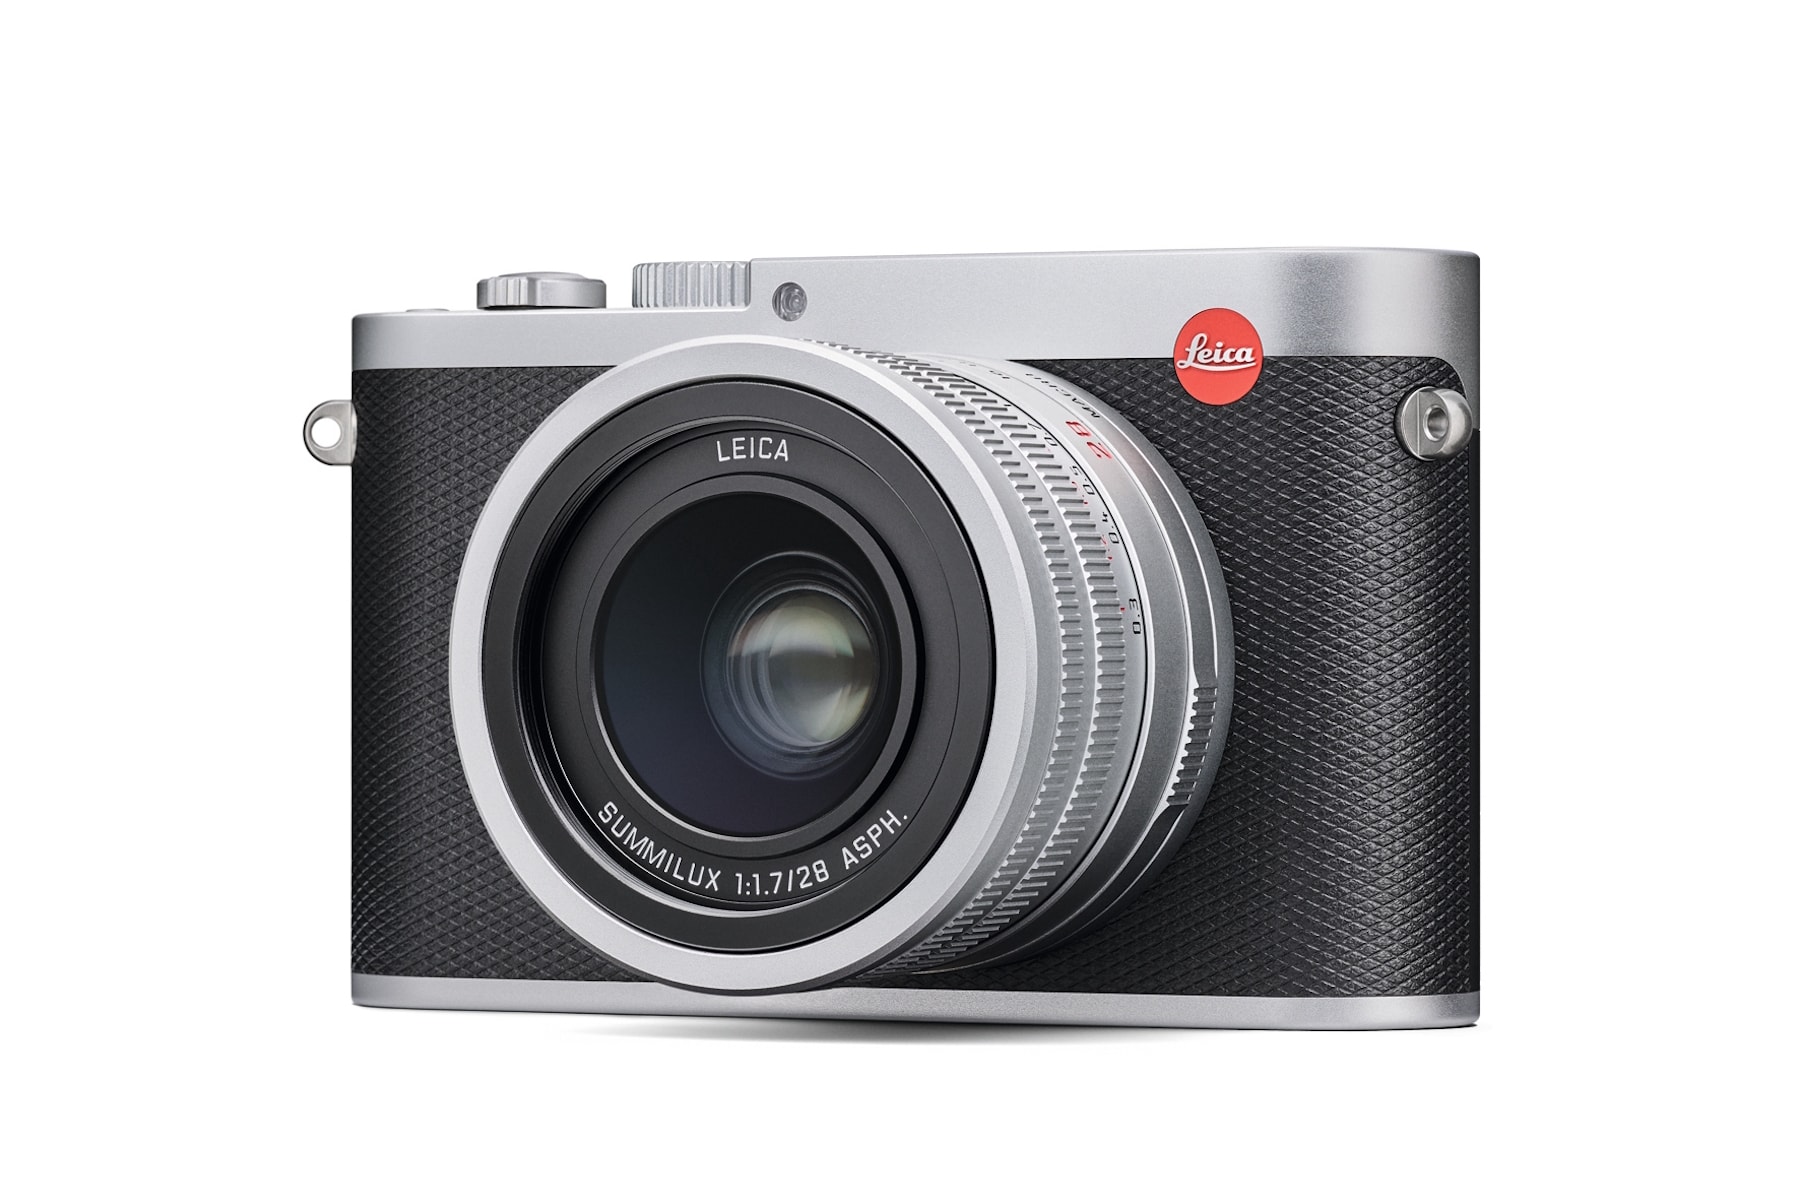 Leica 為全畫幅便攜相機 Leica Q 推出全新銀色版本